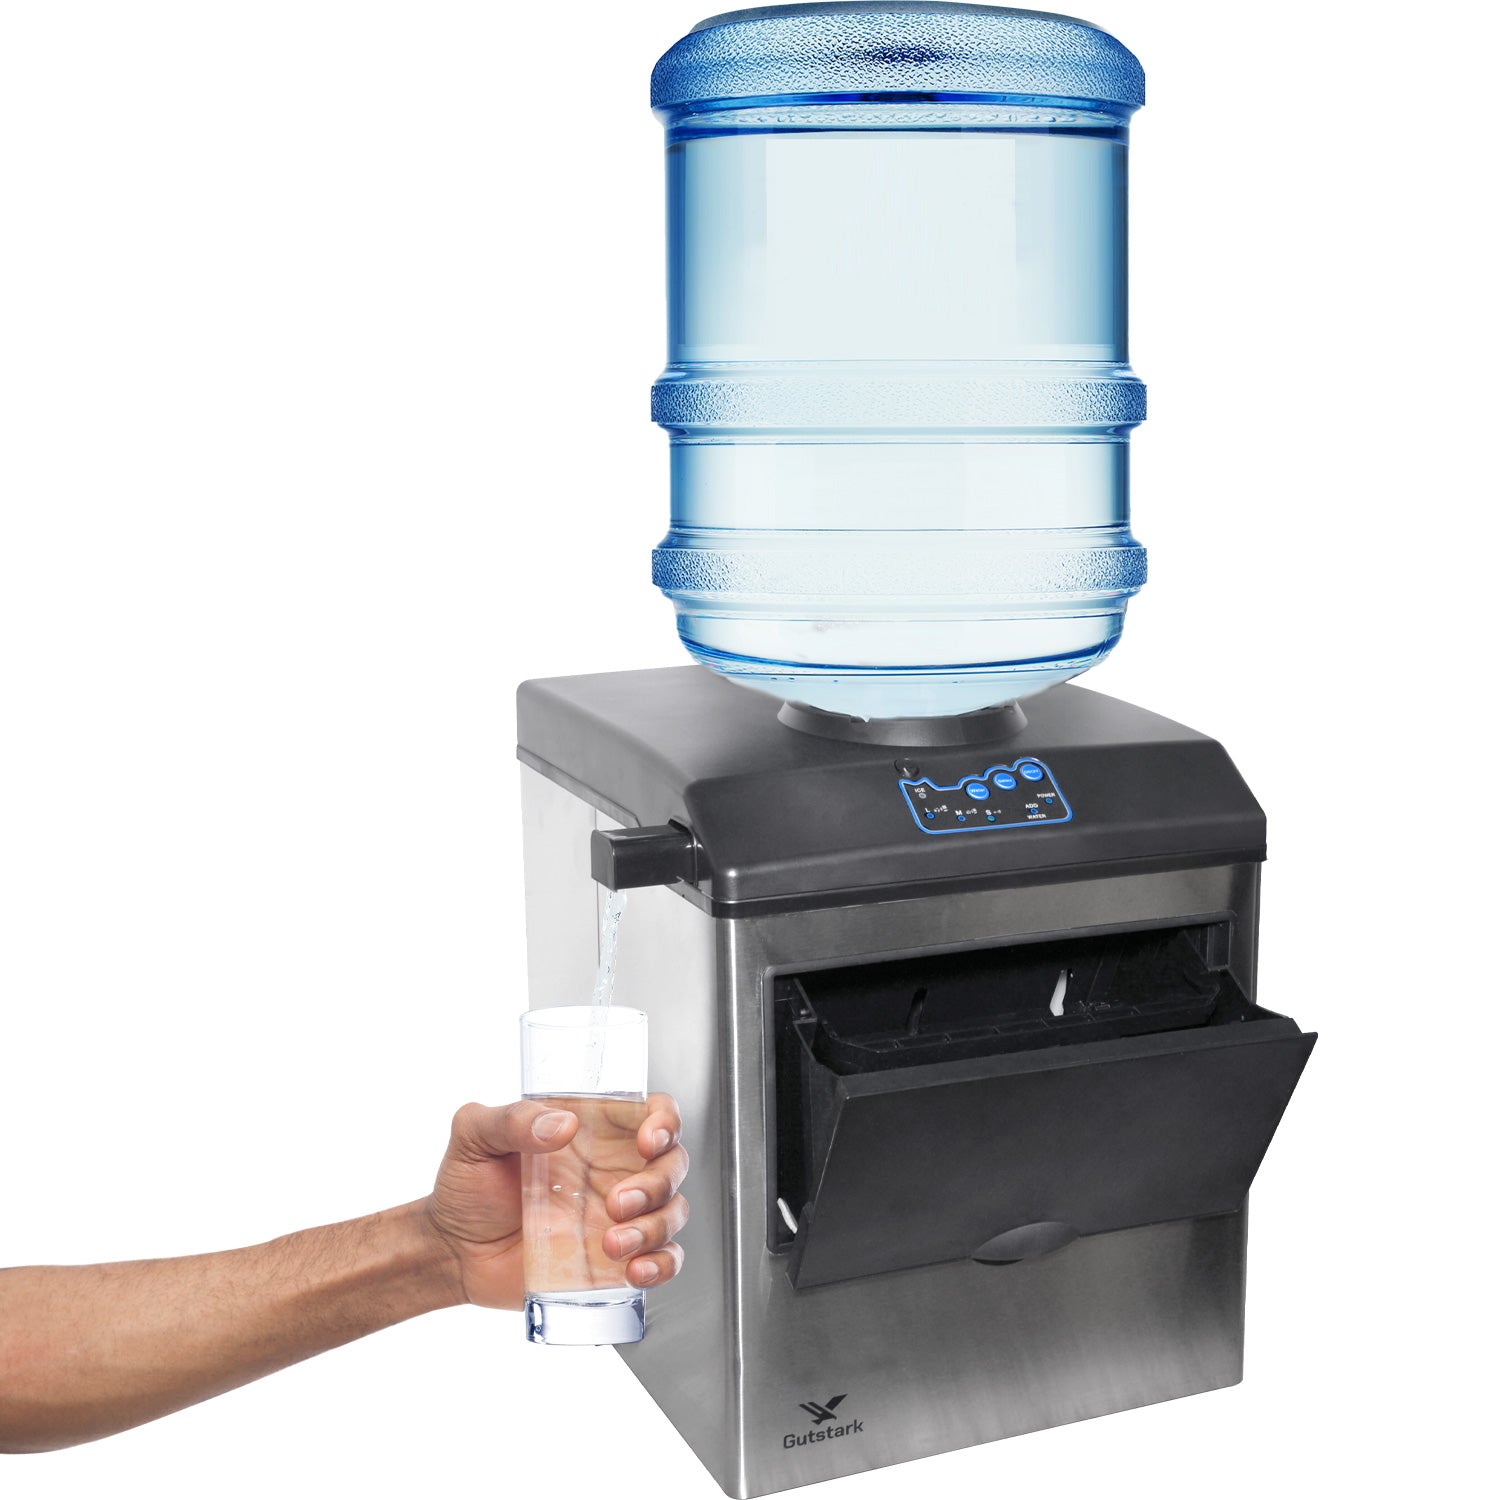 Máquina para hacer hielo – Dispensador de agua 2 en 1 con máquina de hielo  incorporada Independiente caliente con cerradura de seguridad para niños